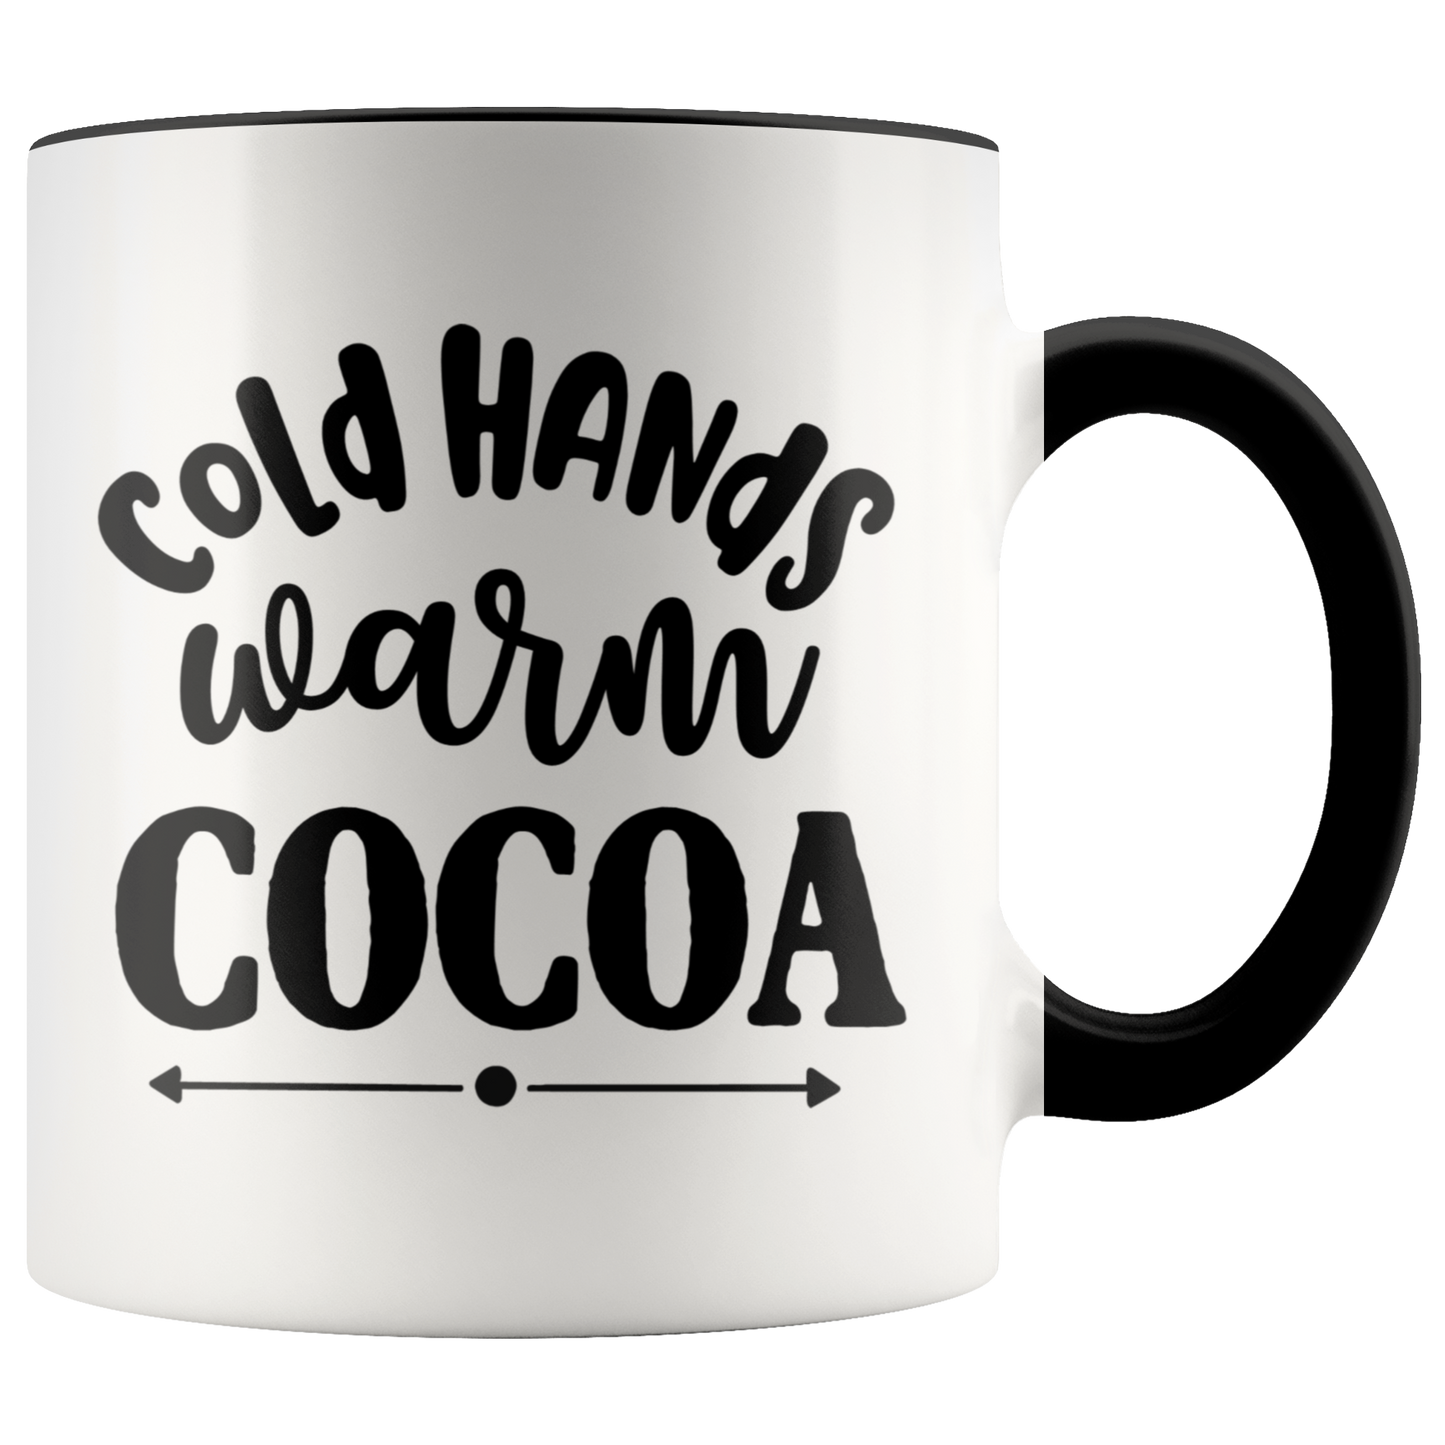 Christmas Gift Cocoa Mug Coffee Mug Funny Mug Holiday Gift Mug Christmas Mug Winter Mug